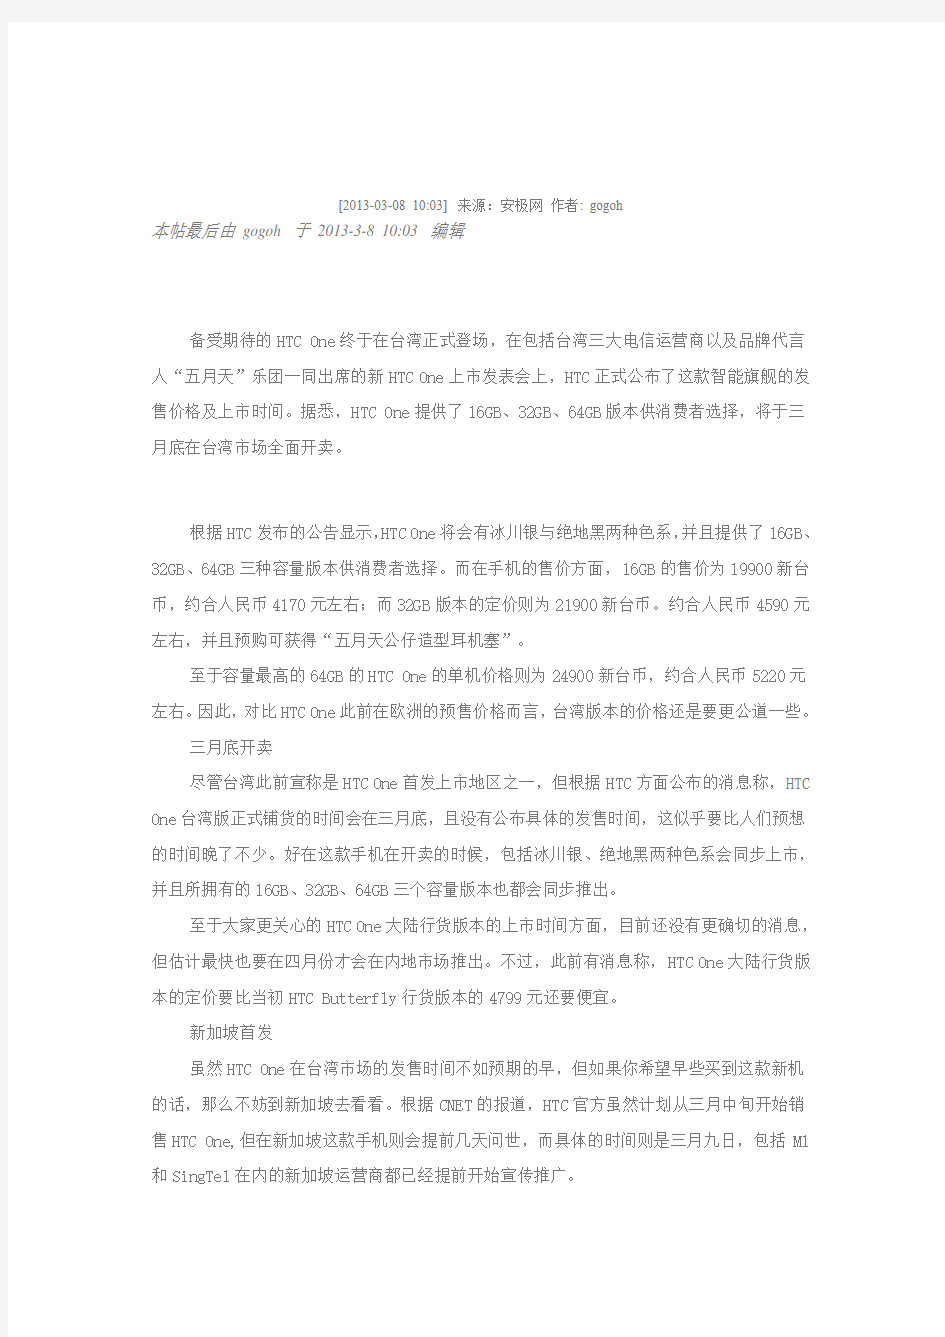 HTC One台湾版售价公布